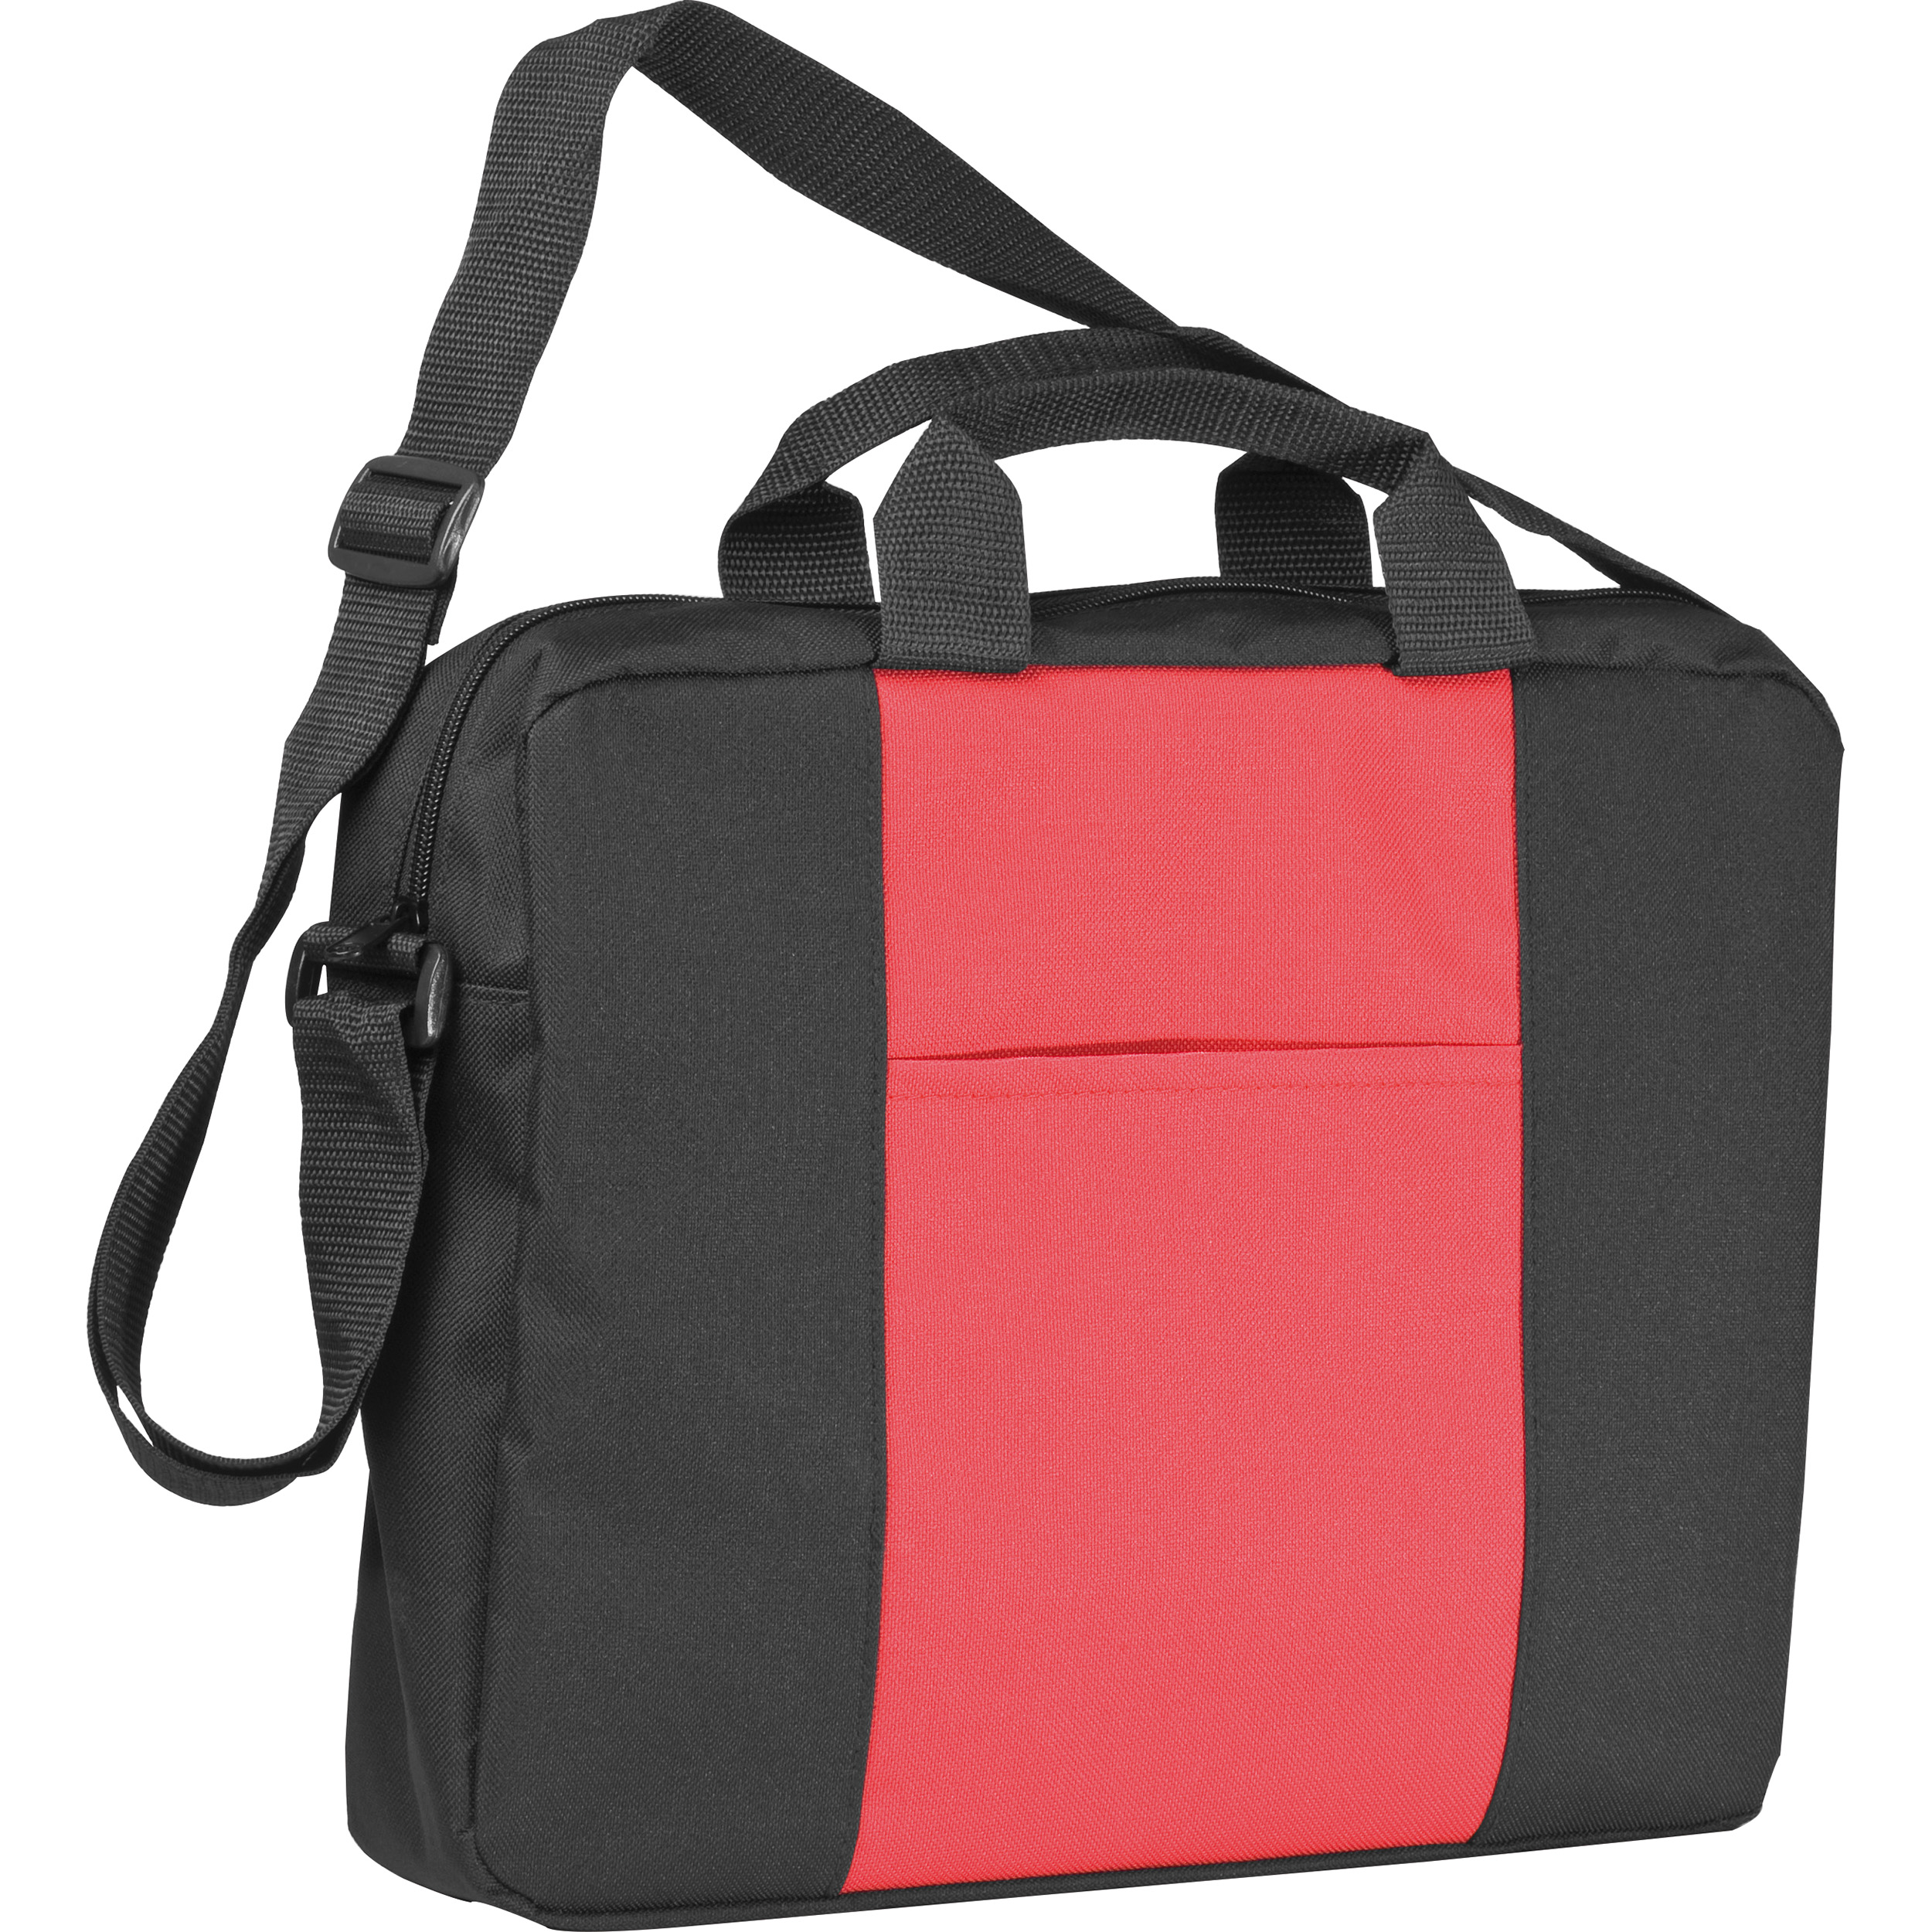 Shoulder bag with a broad stripe